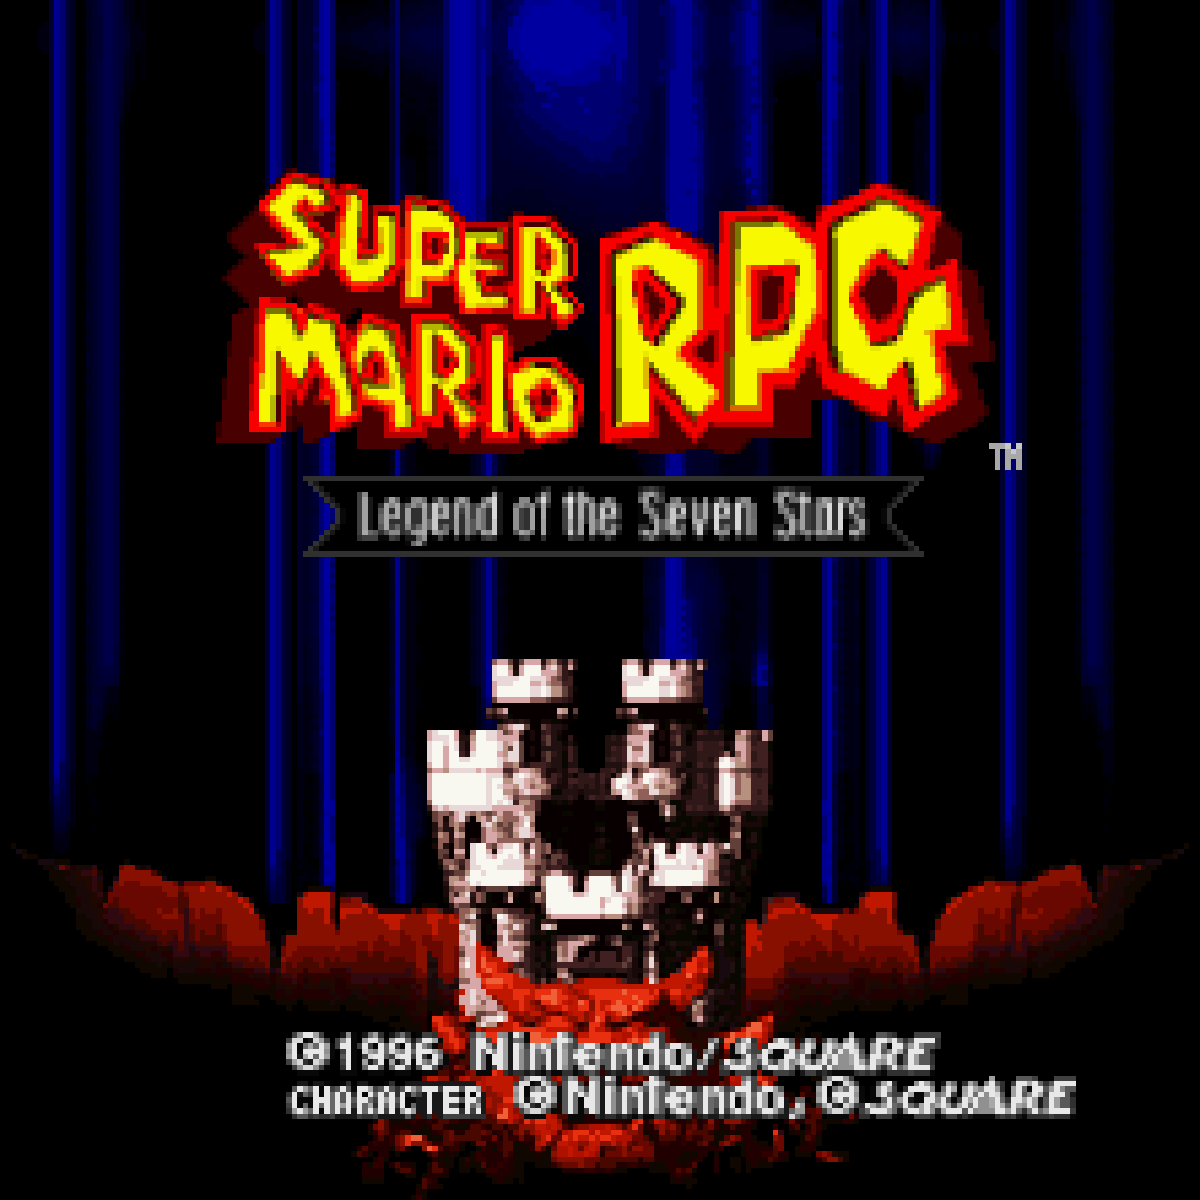 Super Mario RPG - Music